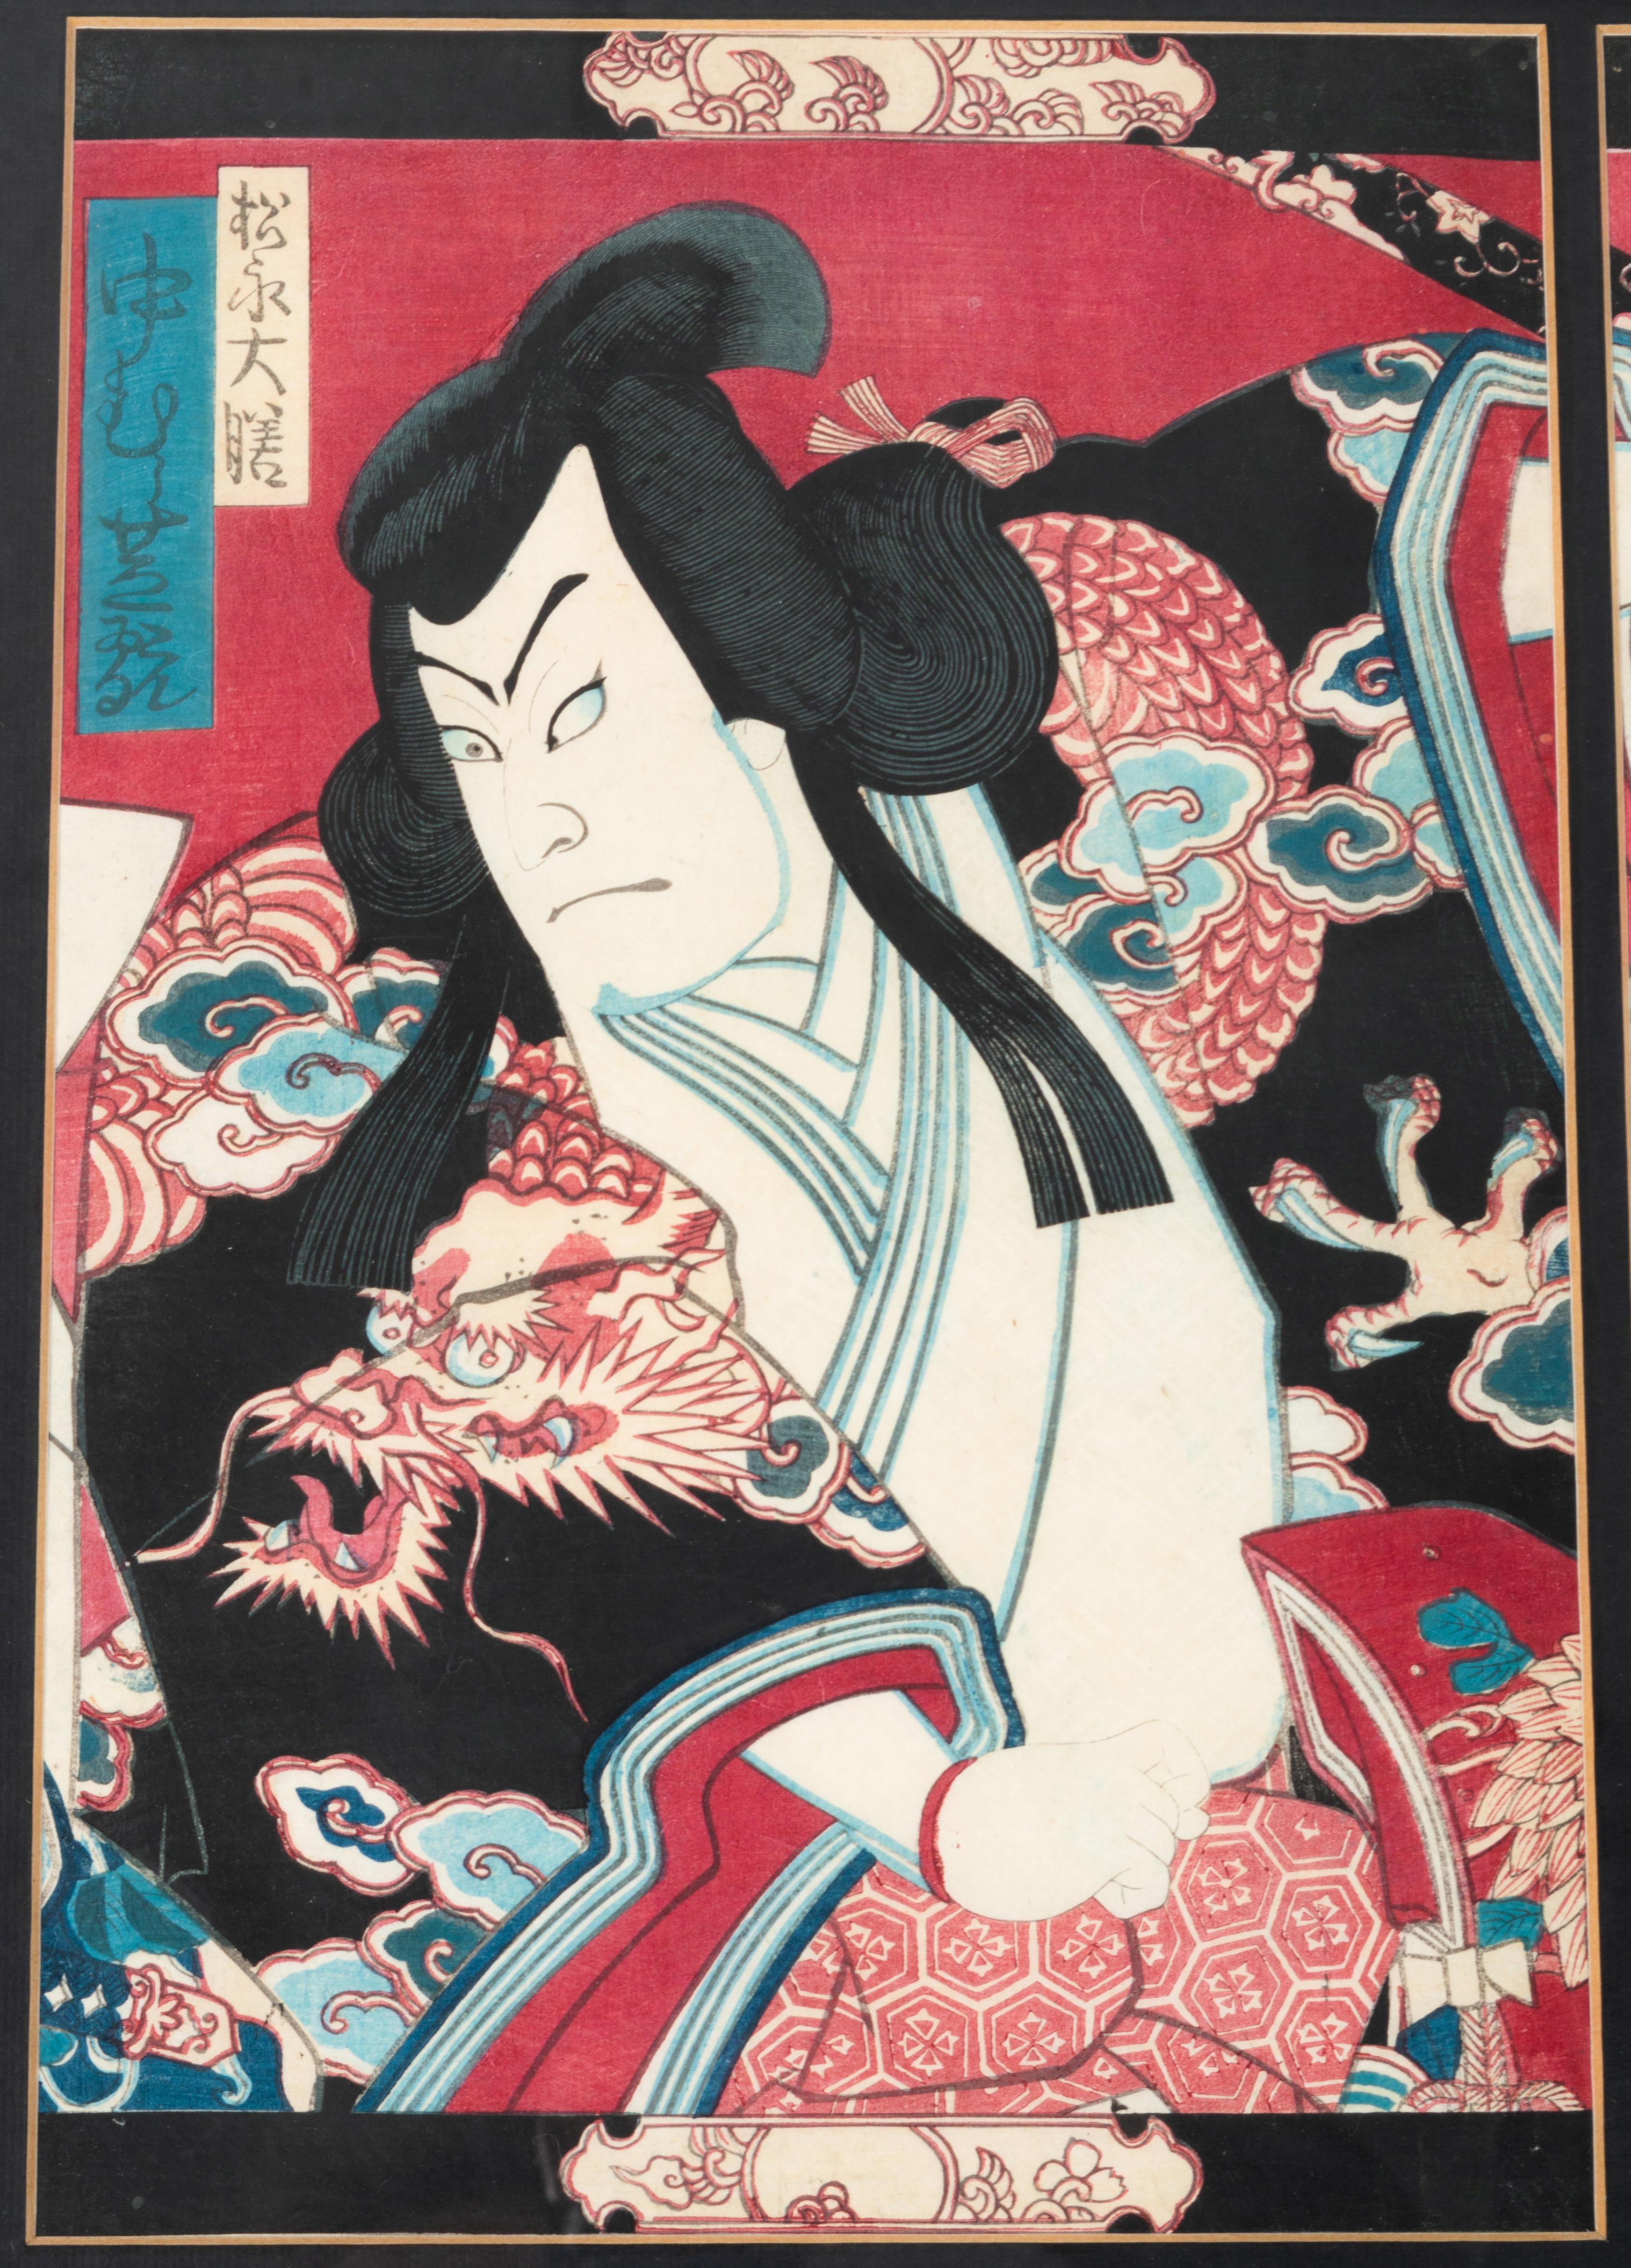 Japanischer Holzschnitt Triptychon Szene einer Kabuki-Theateraufführung
Toyohara Kunichika (1835 - 1900)

Gerahmt, jeder Farbholzschnitt: 23 x 34,5 cm
C.1870 Meiji-Periode
Guter Zustand

Kunichika begeisterte sich für das Kabuki-Theater und